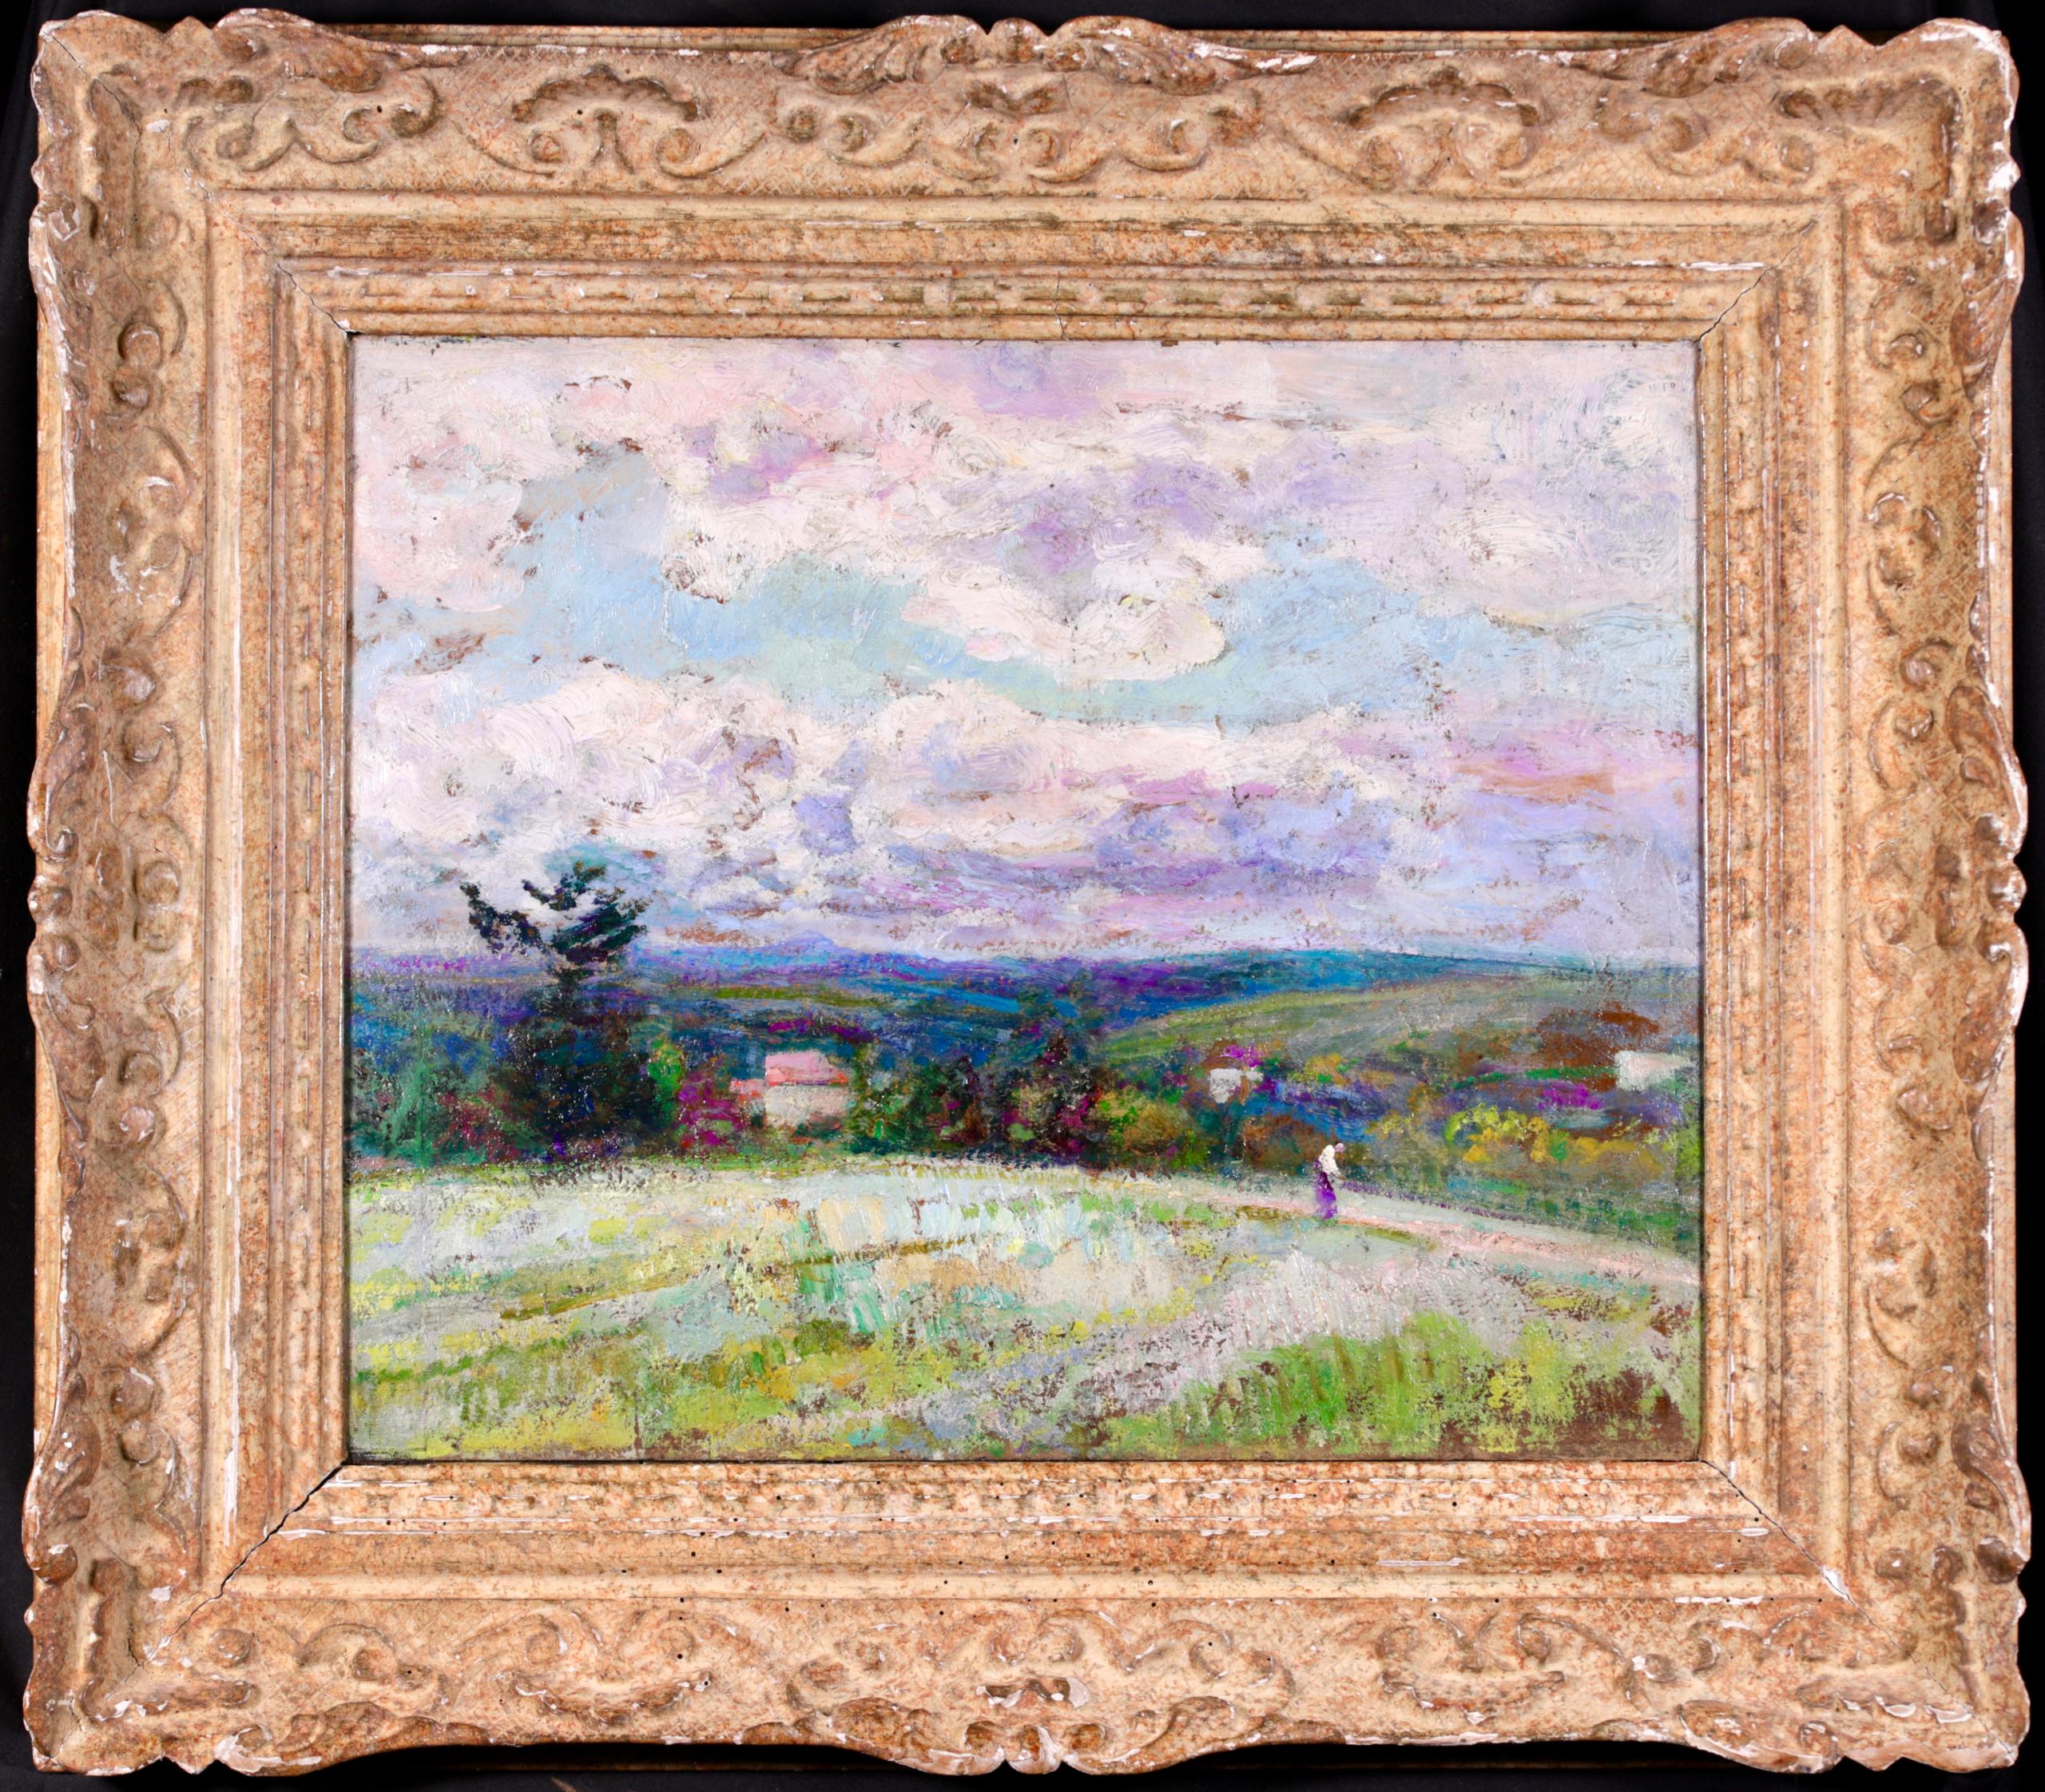 Schönes signiertes Öl auf Karton Landschaft circa 1920 von gesucht nach post impressionistischen Maler Victor Charreton. Das Werk zeigt eine Figur, die durch grüne, hügelige Felder mit Häusern in der Ferne geht, während Wolken in Blau-, Violett- und